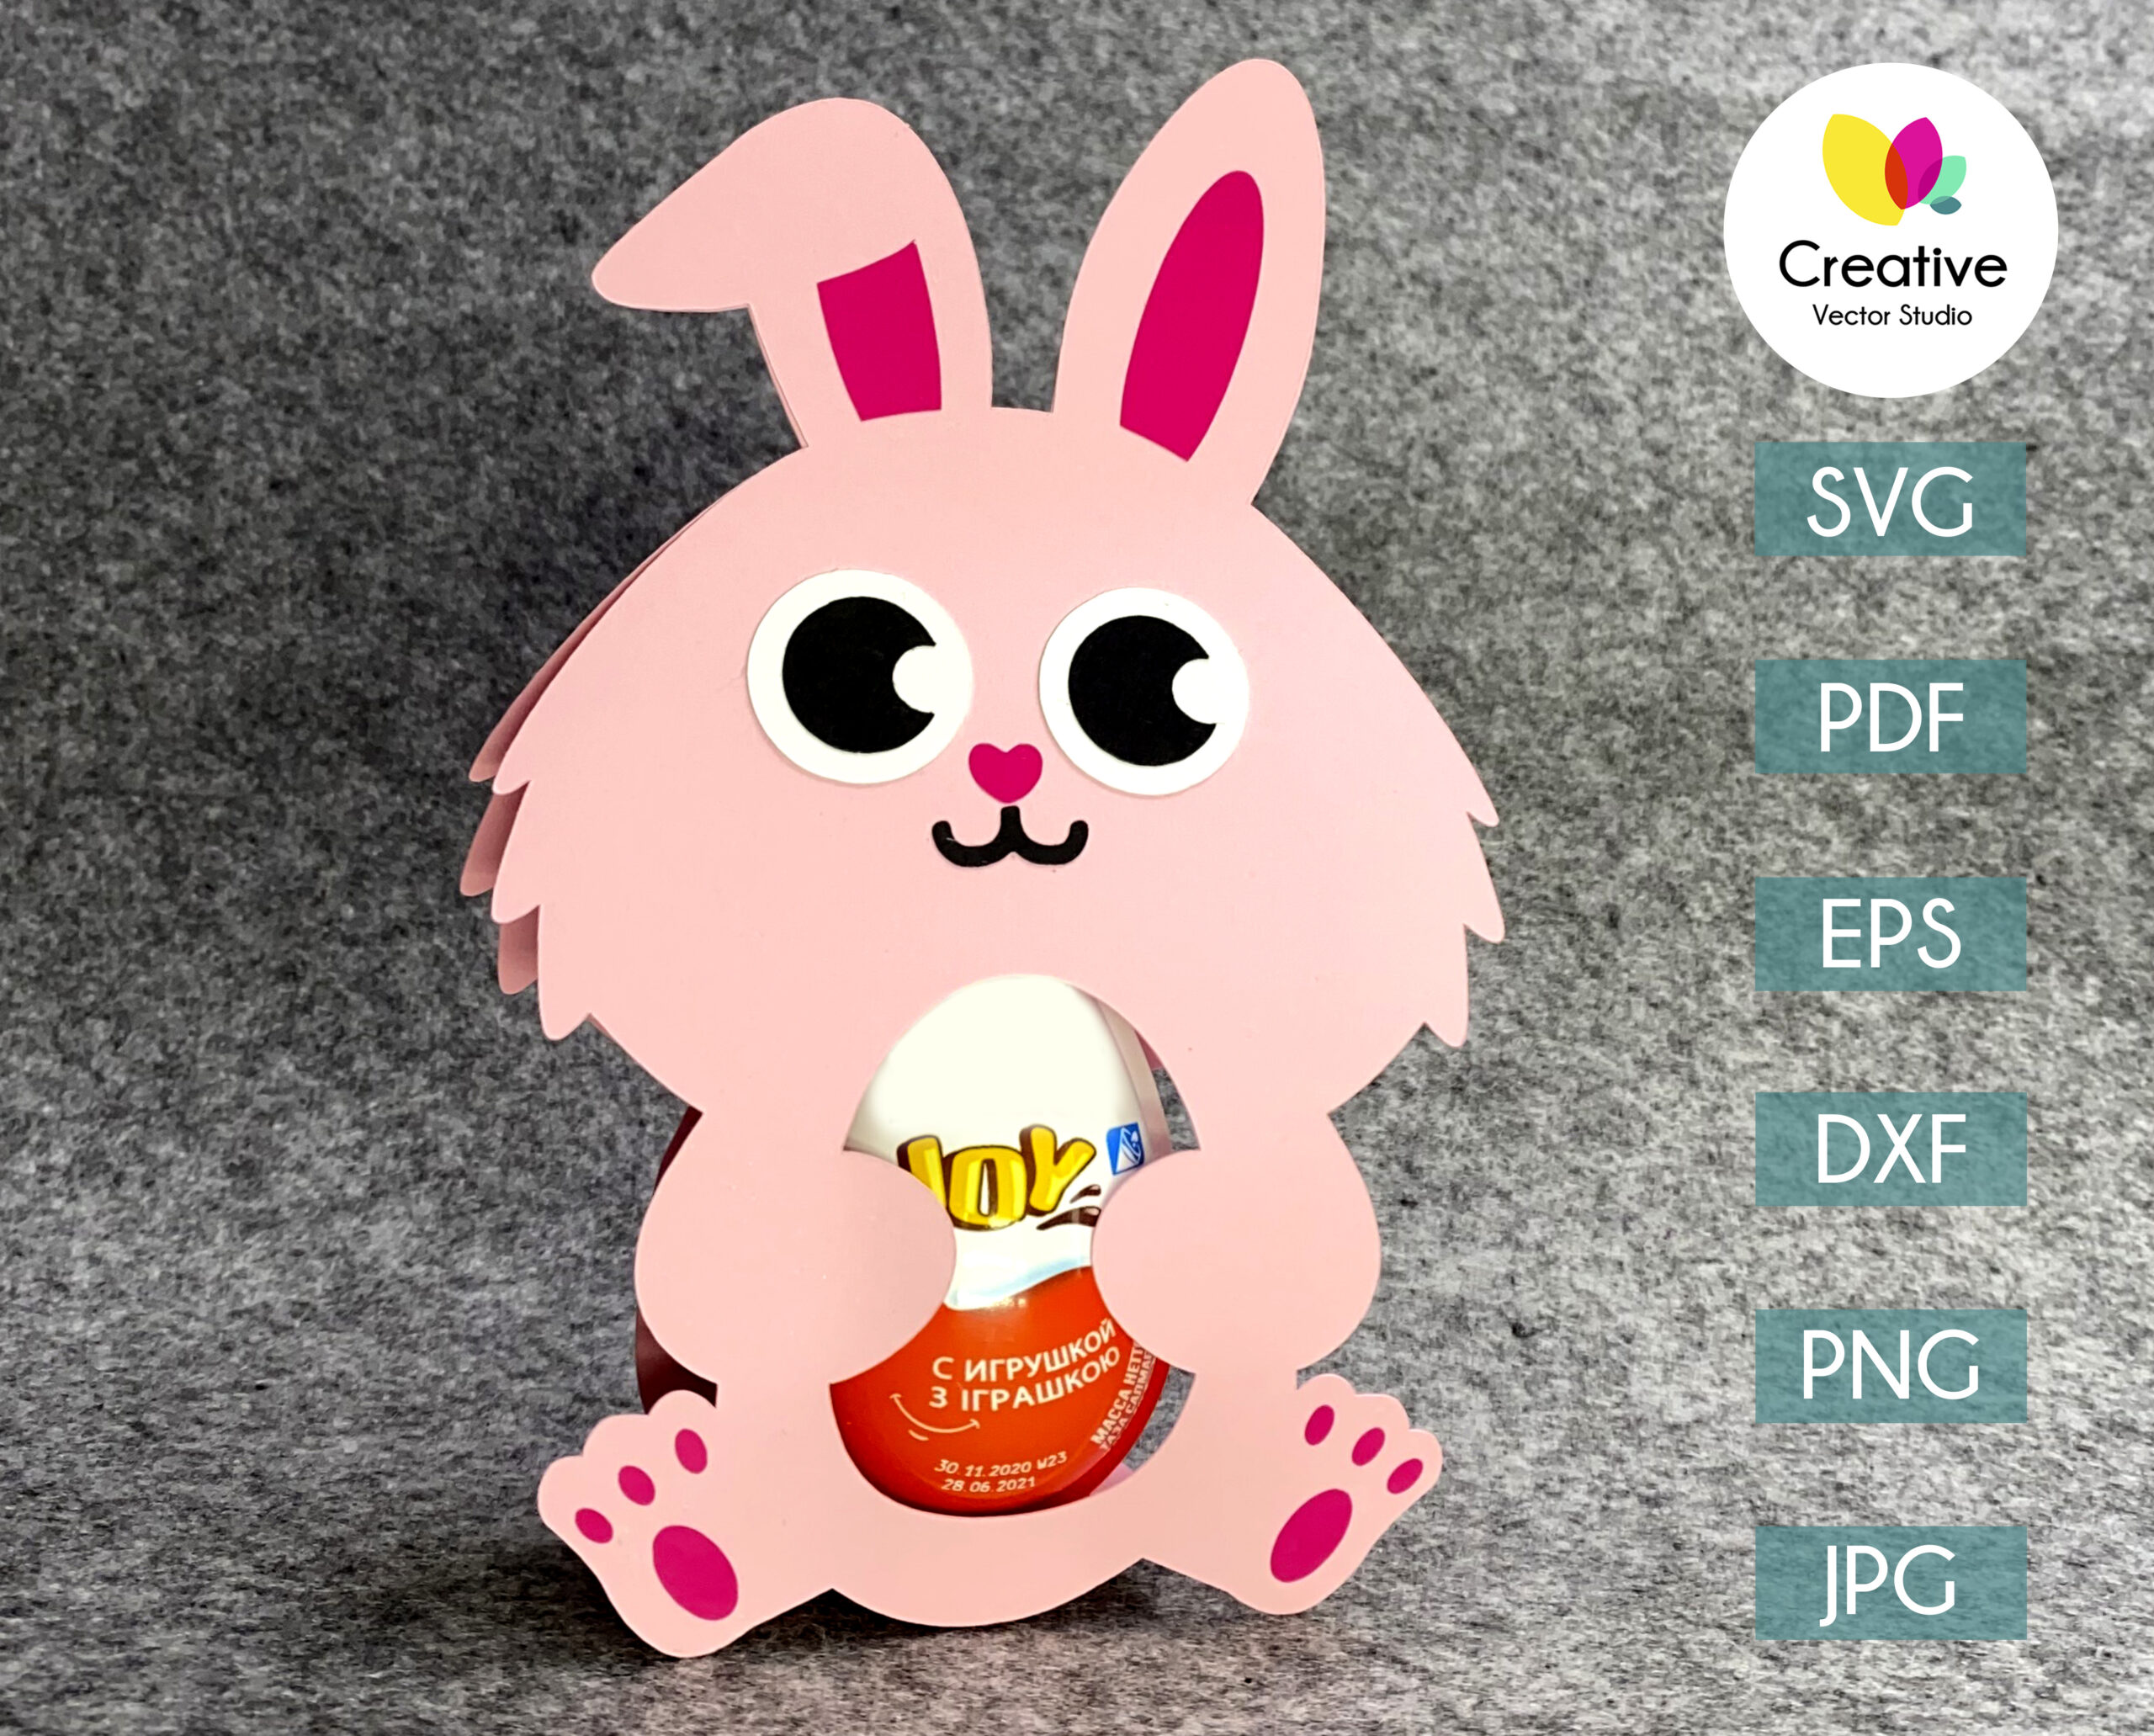 Download Bunny Easter Egg Holder Svg Cut File Creative Vector Studio